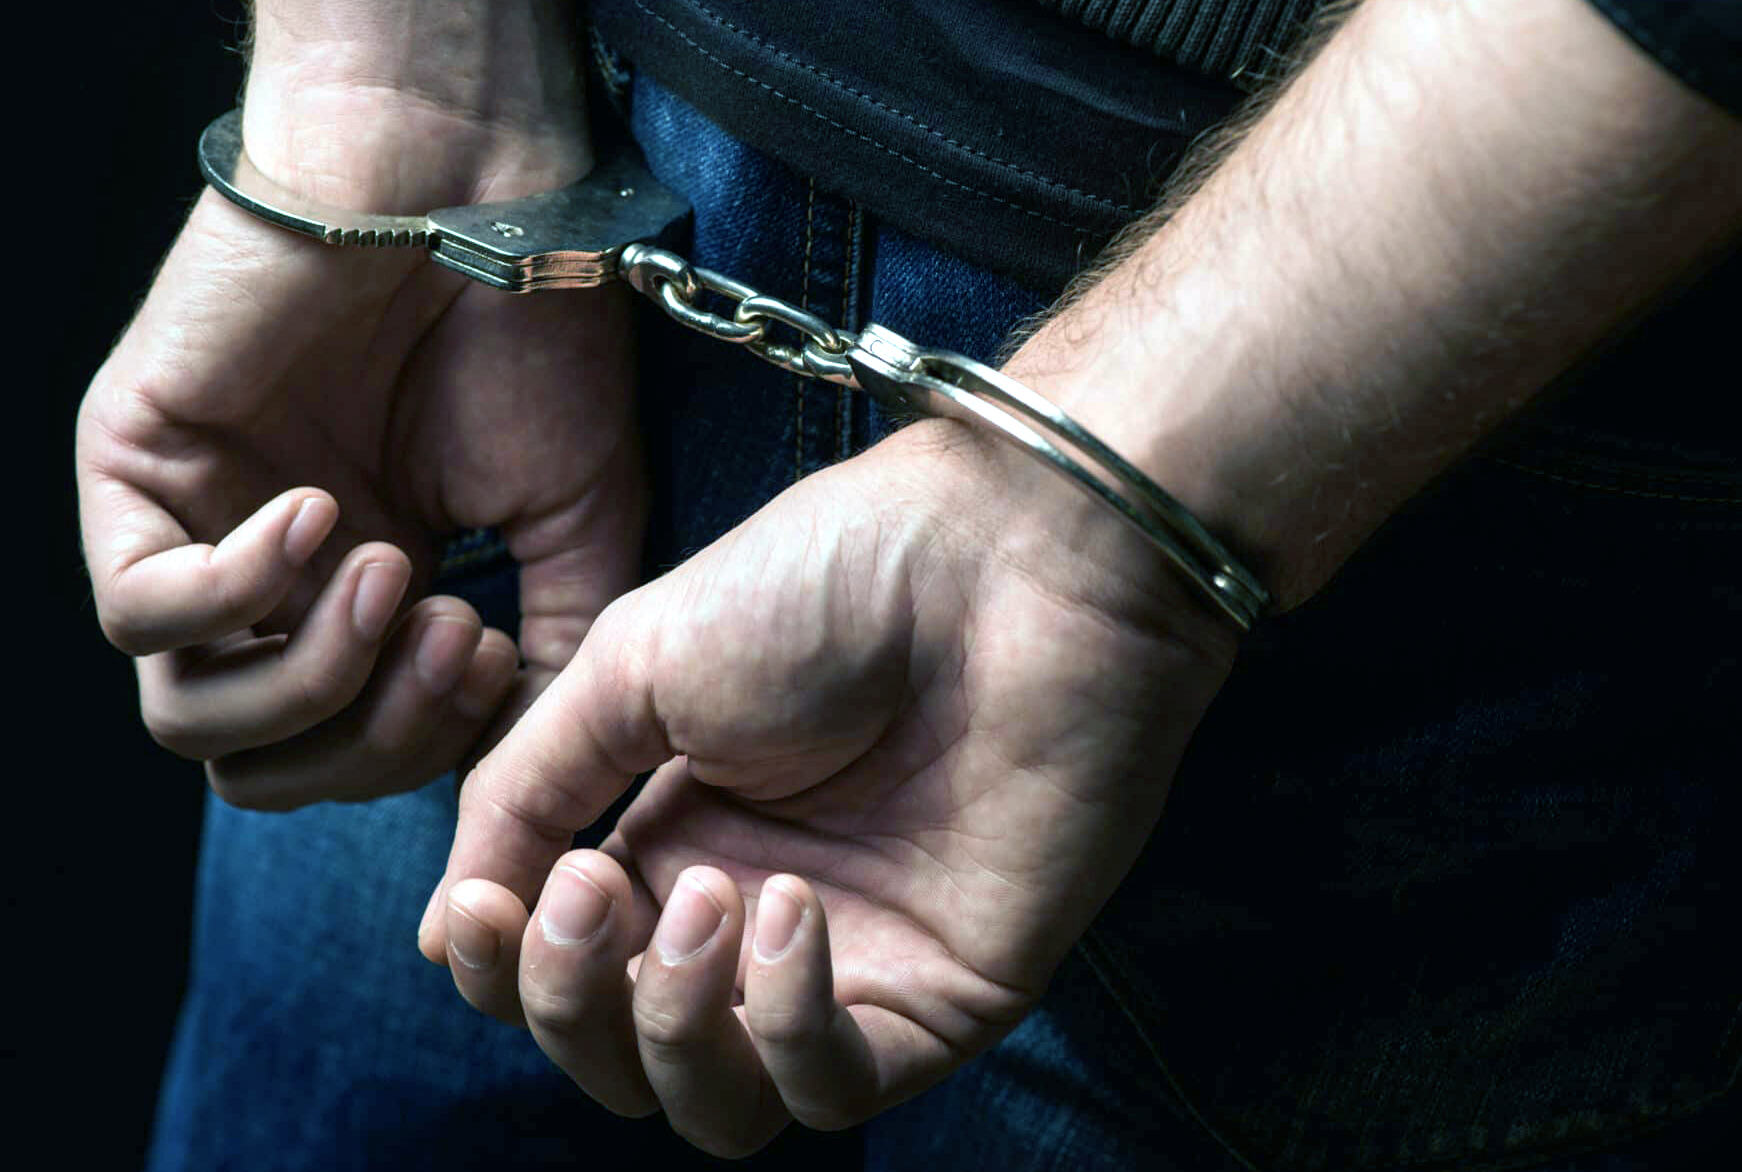 पुलिस का पूर्व हवलदार अफीम की तस्करी करने के आरोप में गिरफ्तार